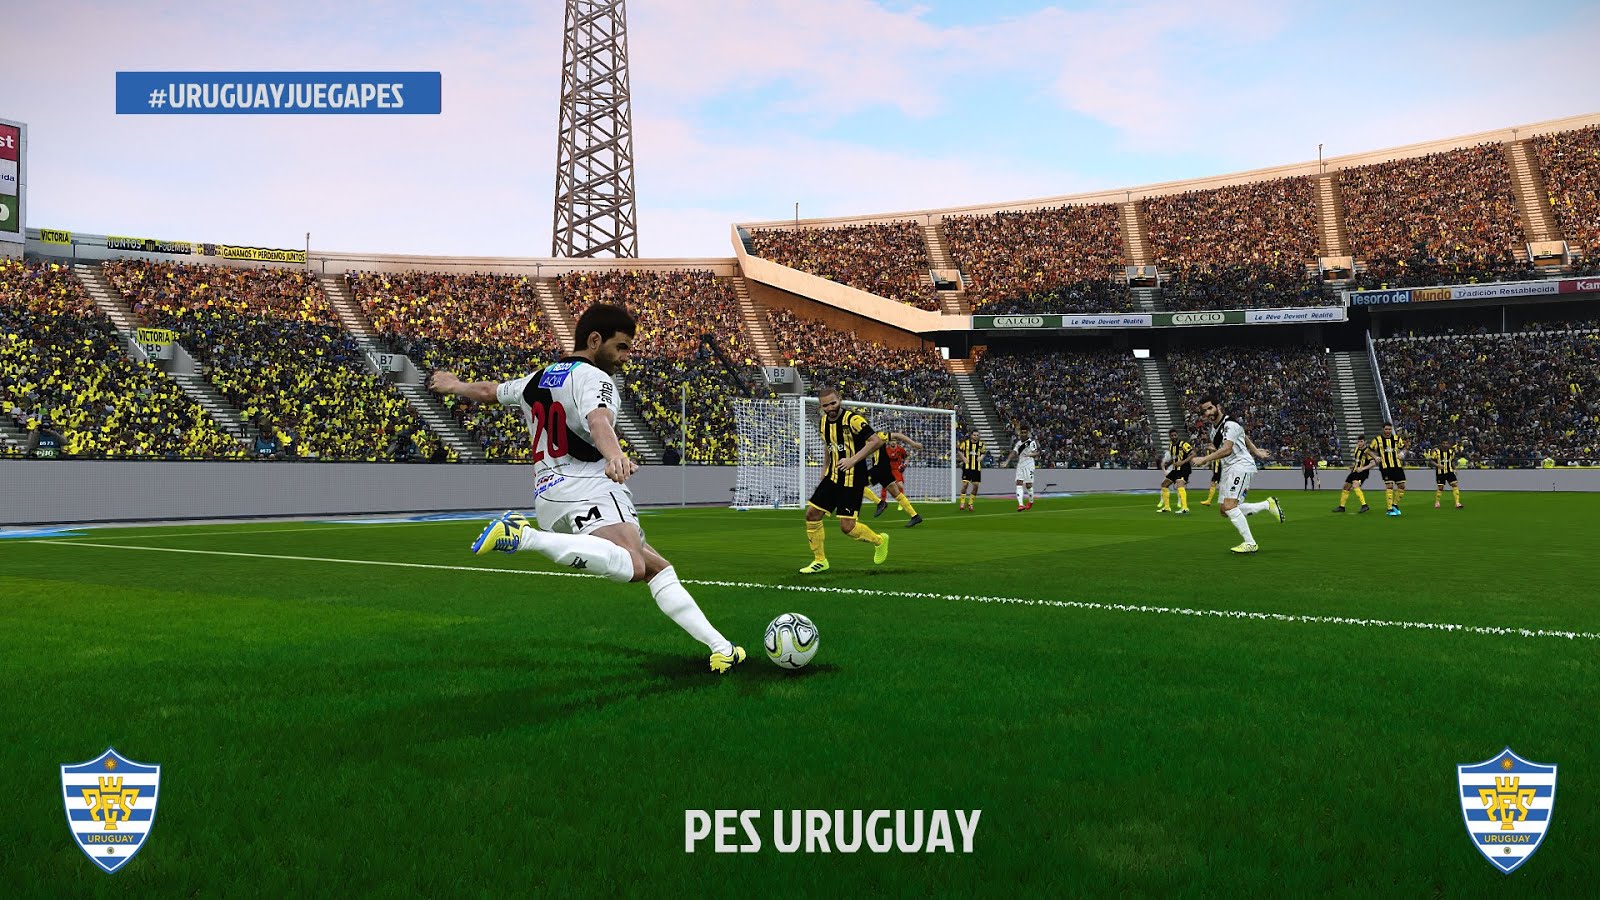 Liga uruguaya de futbol - Liga uruguaya de futbol